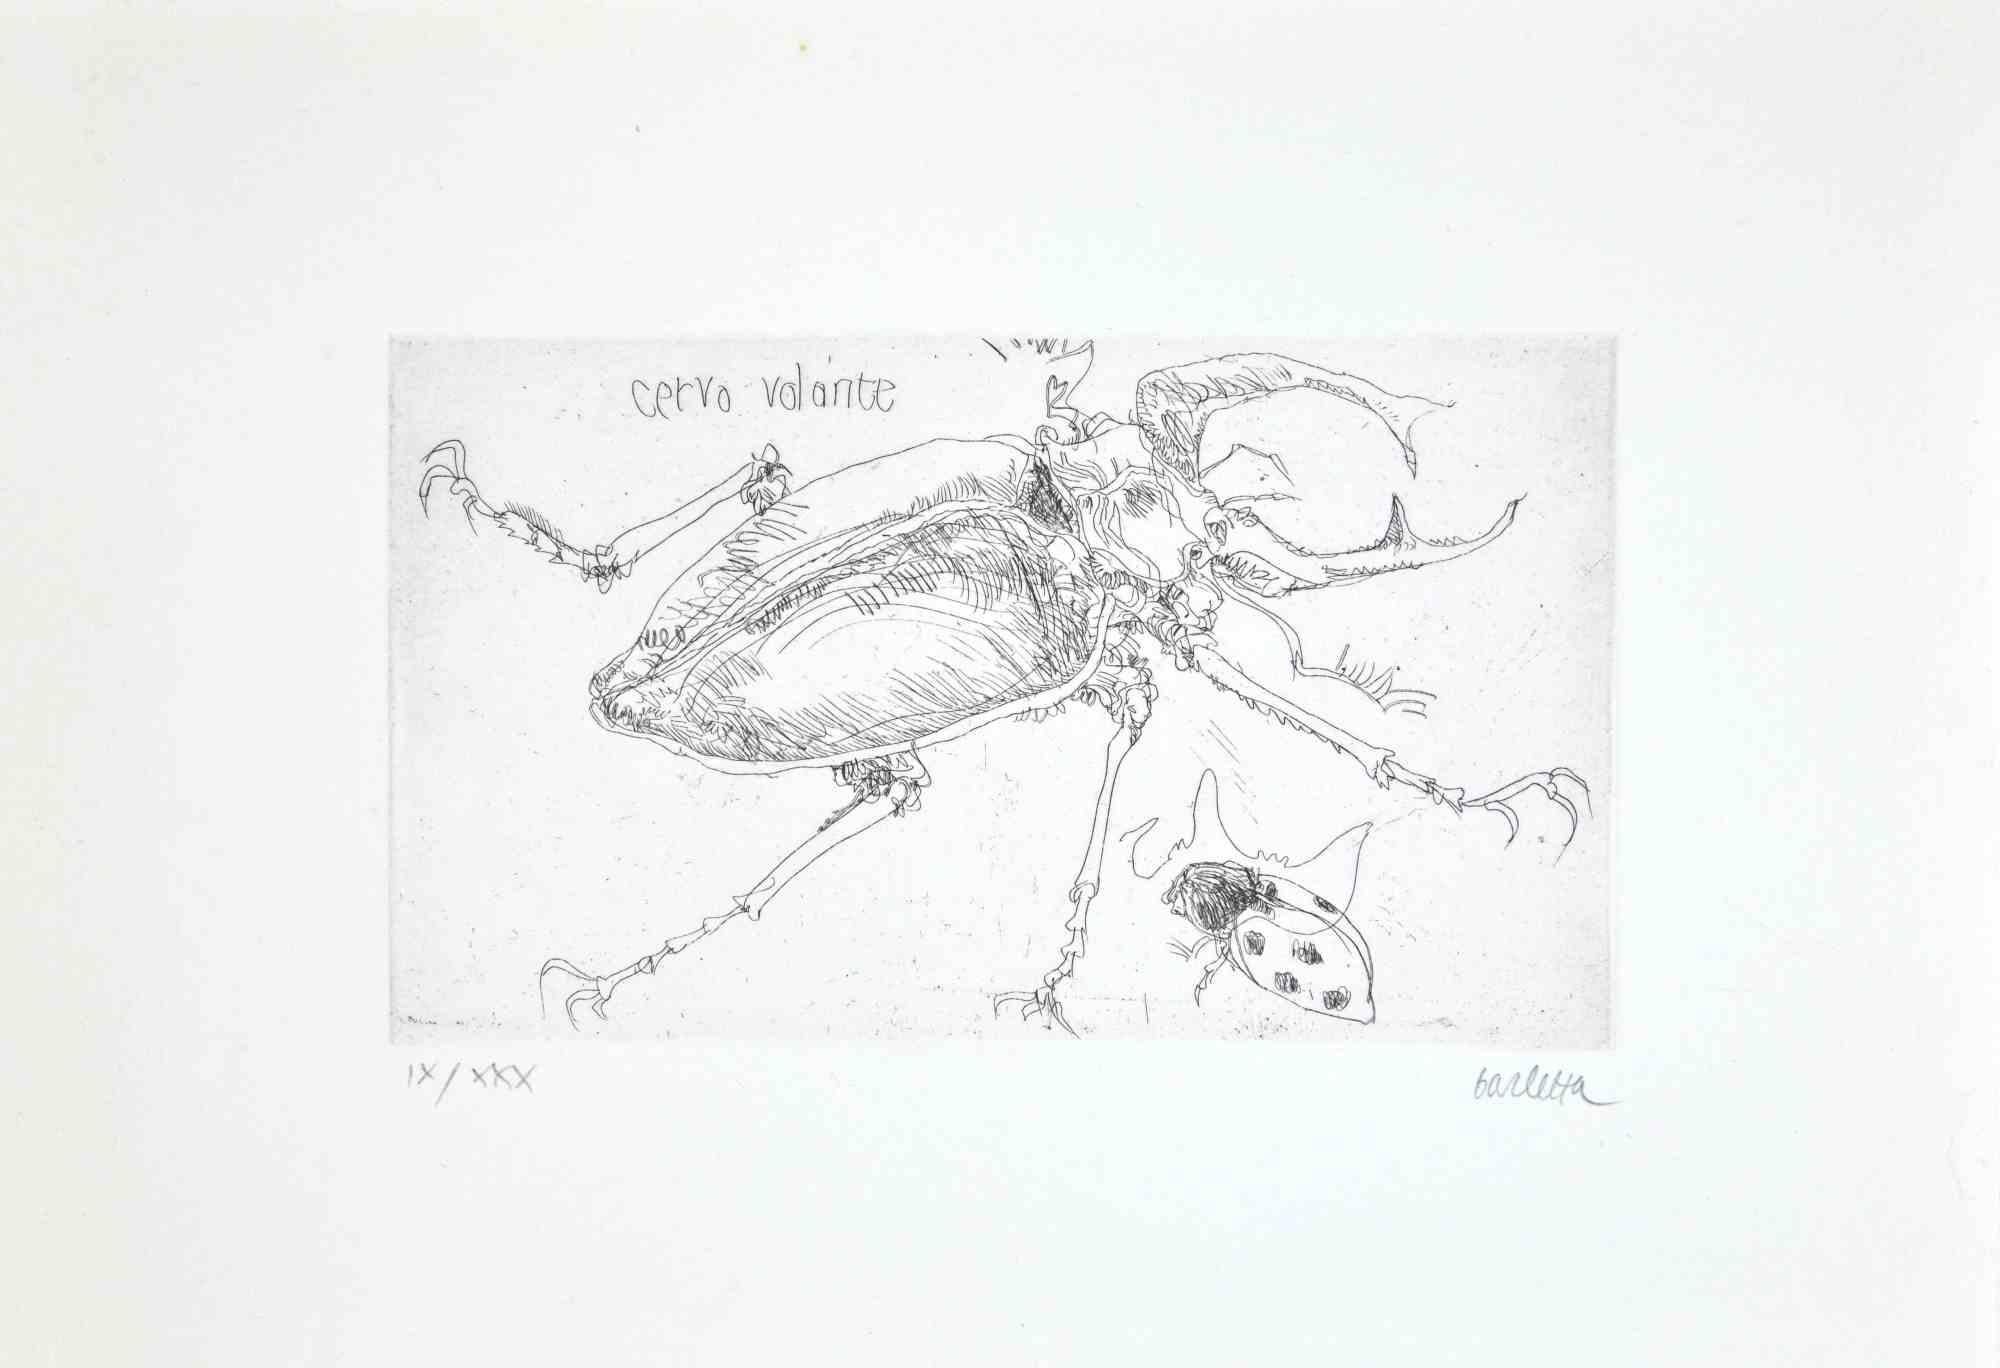 Insectes  est une gravure réalisée par  Sergio Barletta en 1974.

Signé à la main au crayon en bas à droite. Numérotée en bas à gauche en chiffres romains, de l'édition de XXX tirages.

Titre en italien en haut à gauche  "Cervo Volante".

Édition